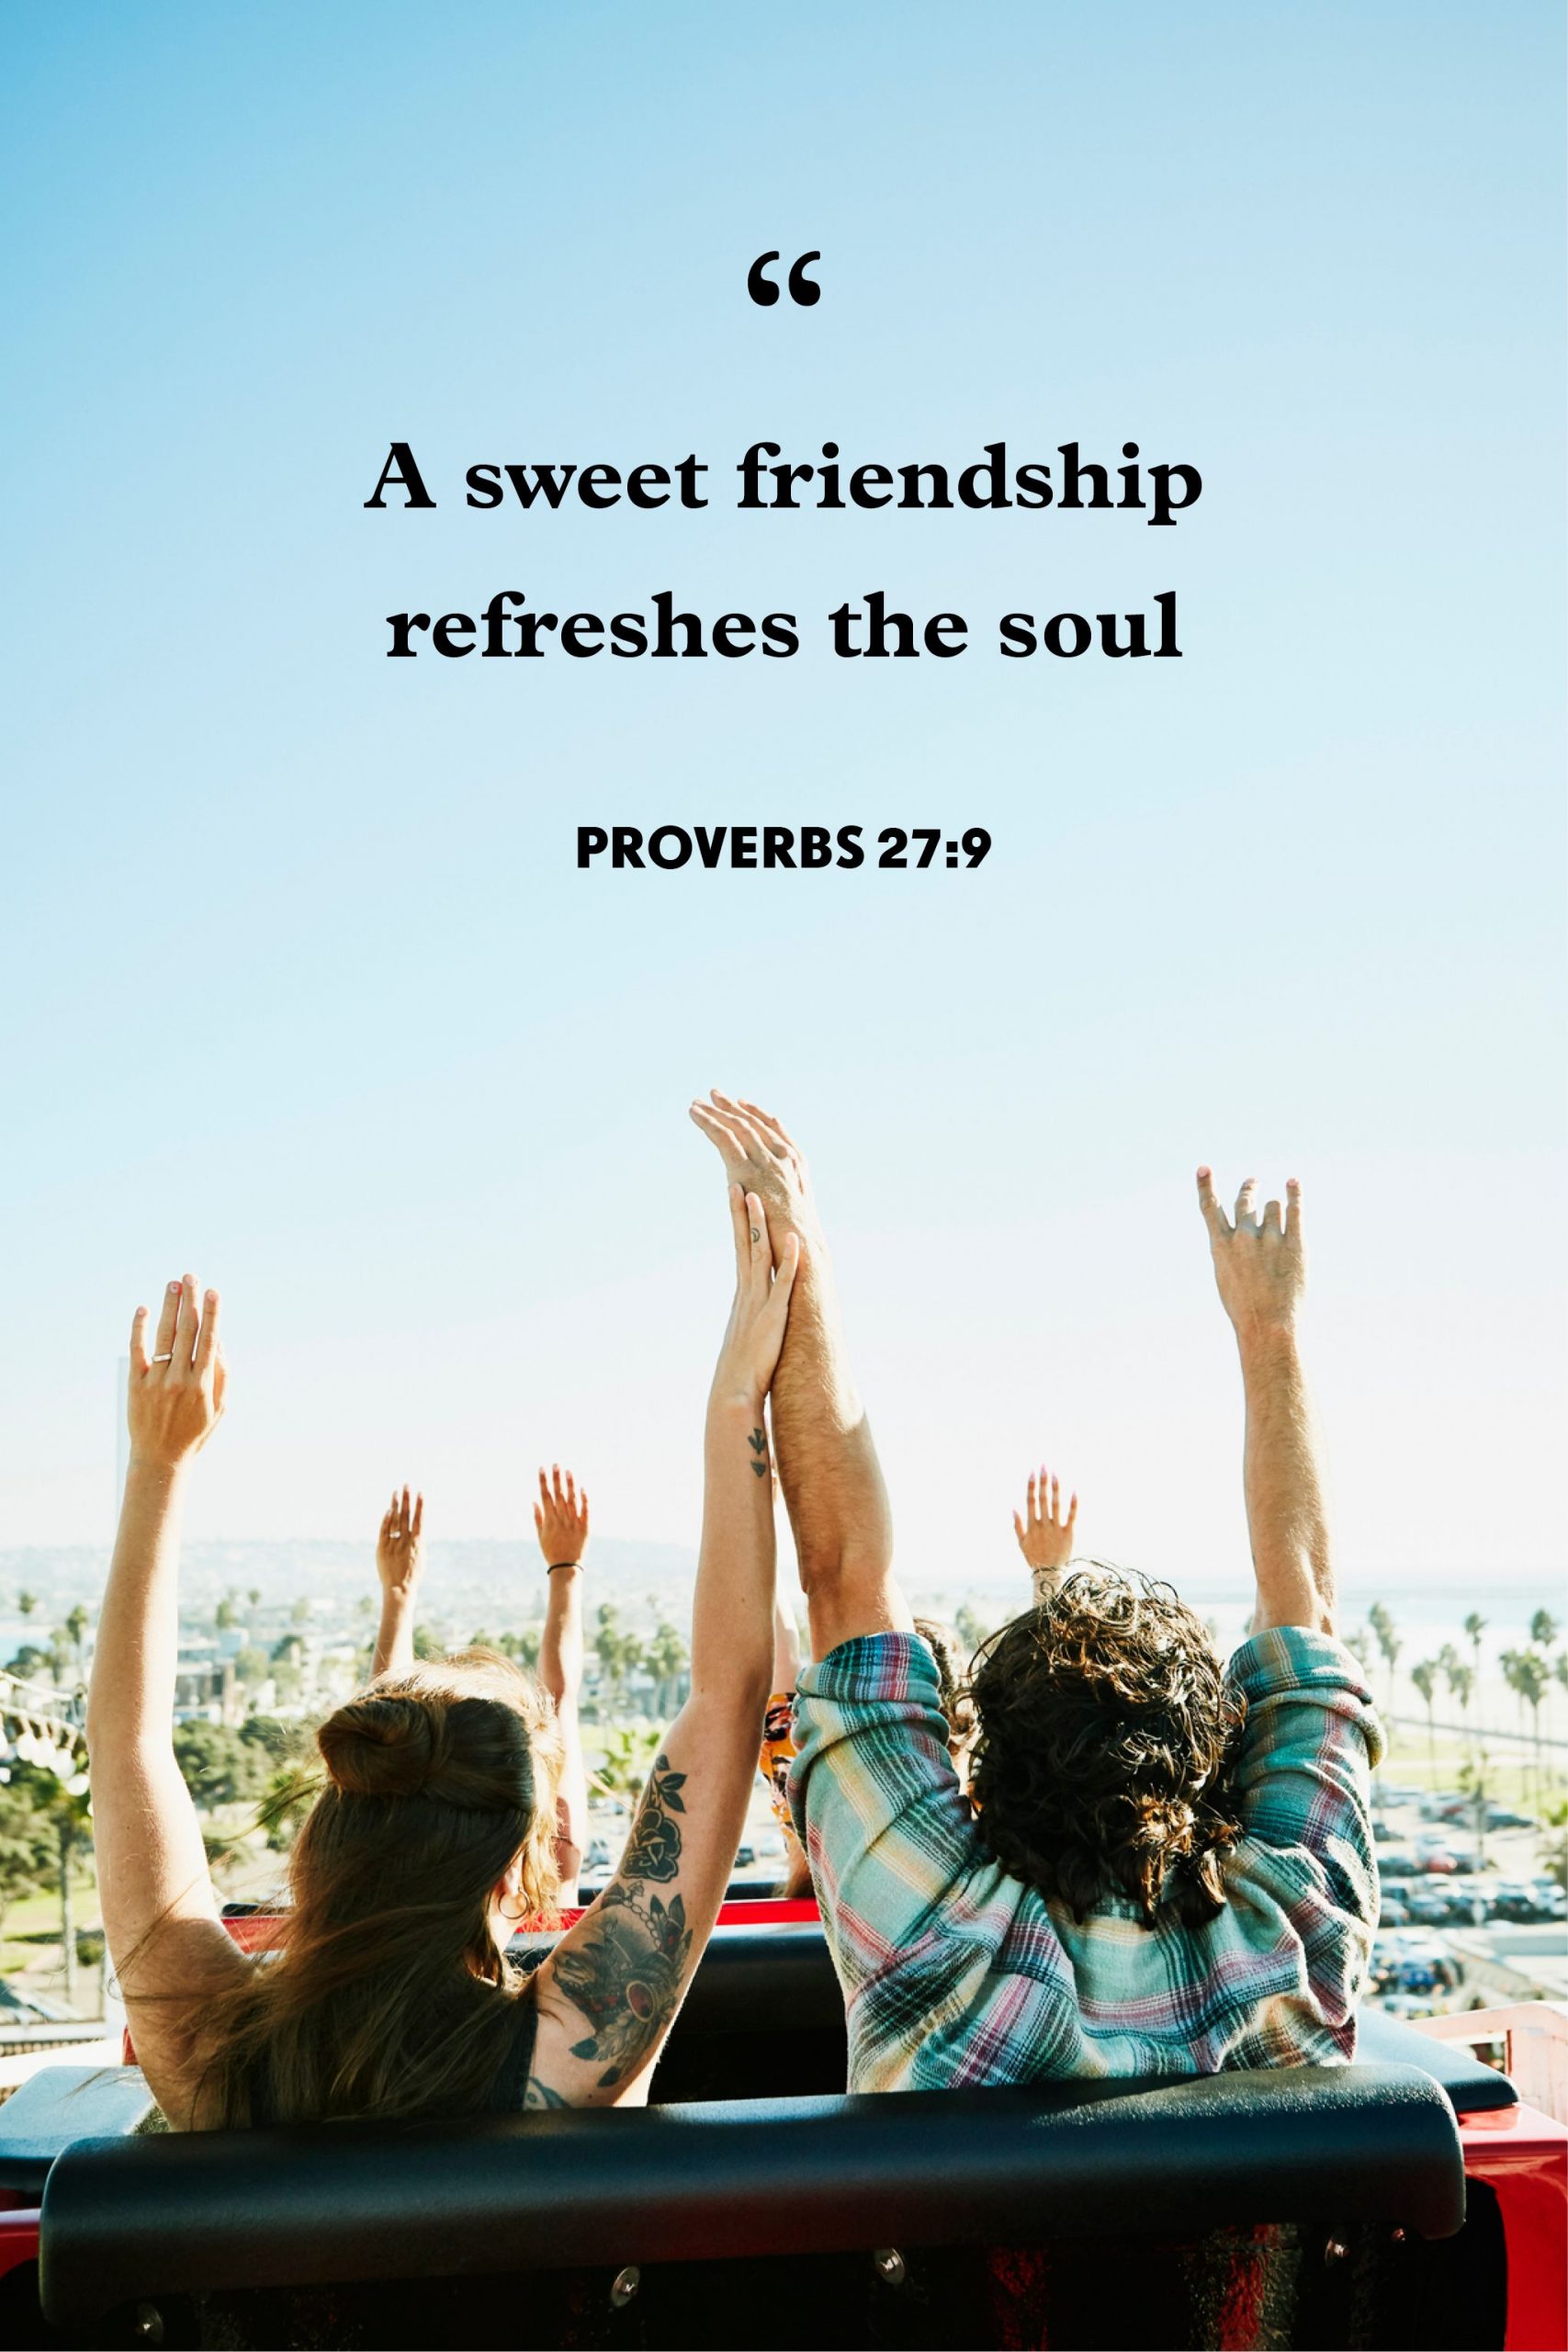 120 Short Friendship Quotes Your Best Friend Will Love Websplashers